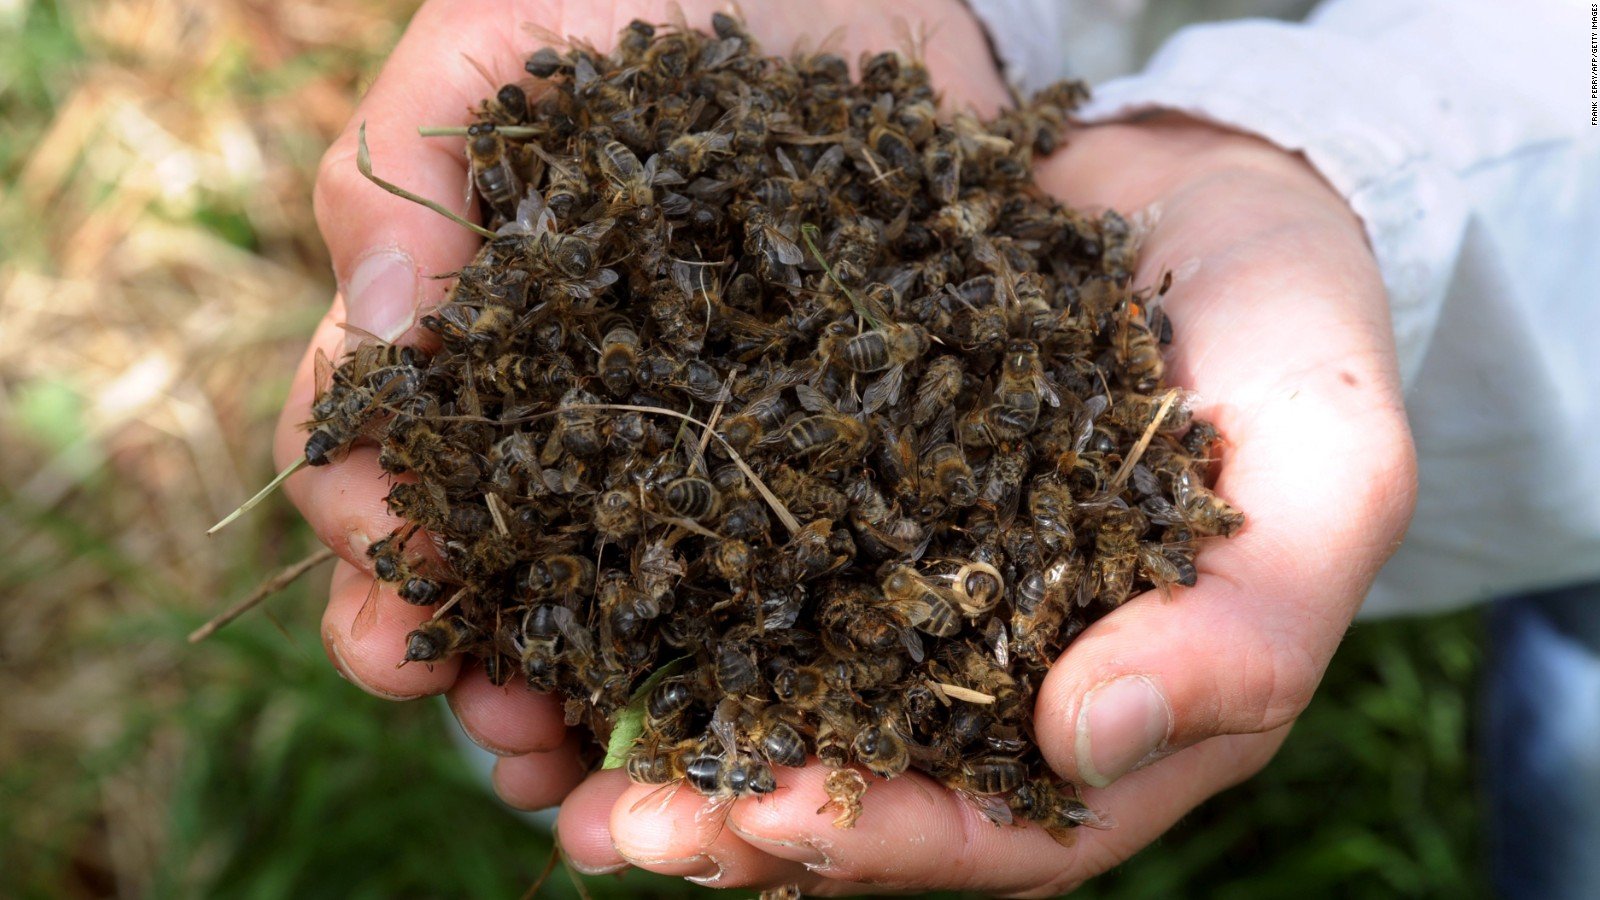 მკვდარი ფუტკრებით მკურნალობა ახლომხედველობის,  ვენების ვარიკოზული გაგანიერების და  სახსრების ტკივილის დროს